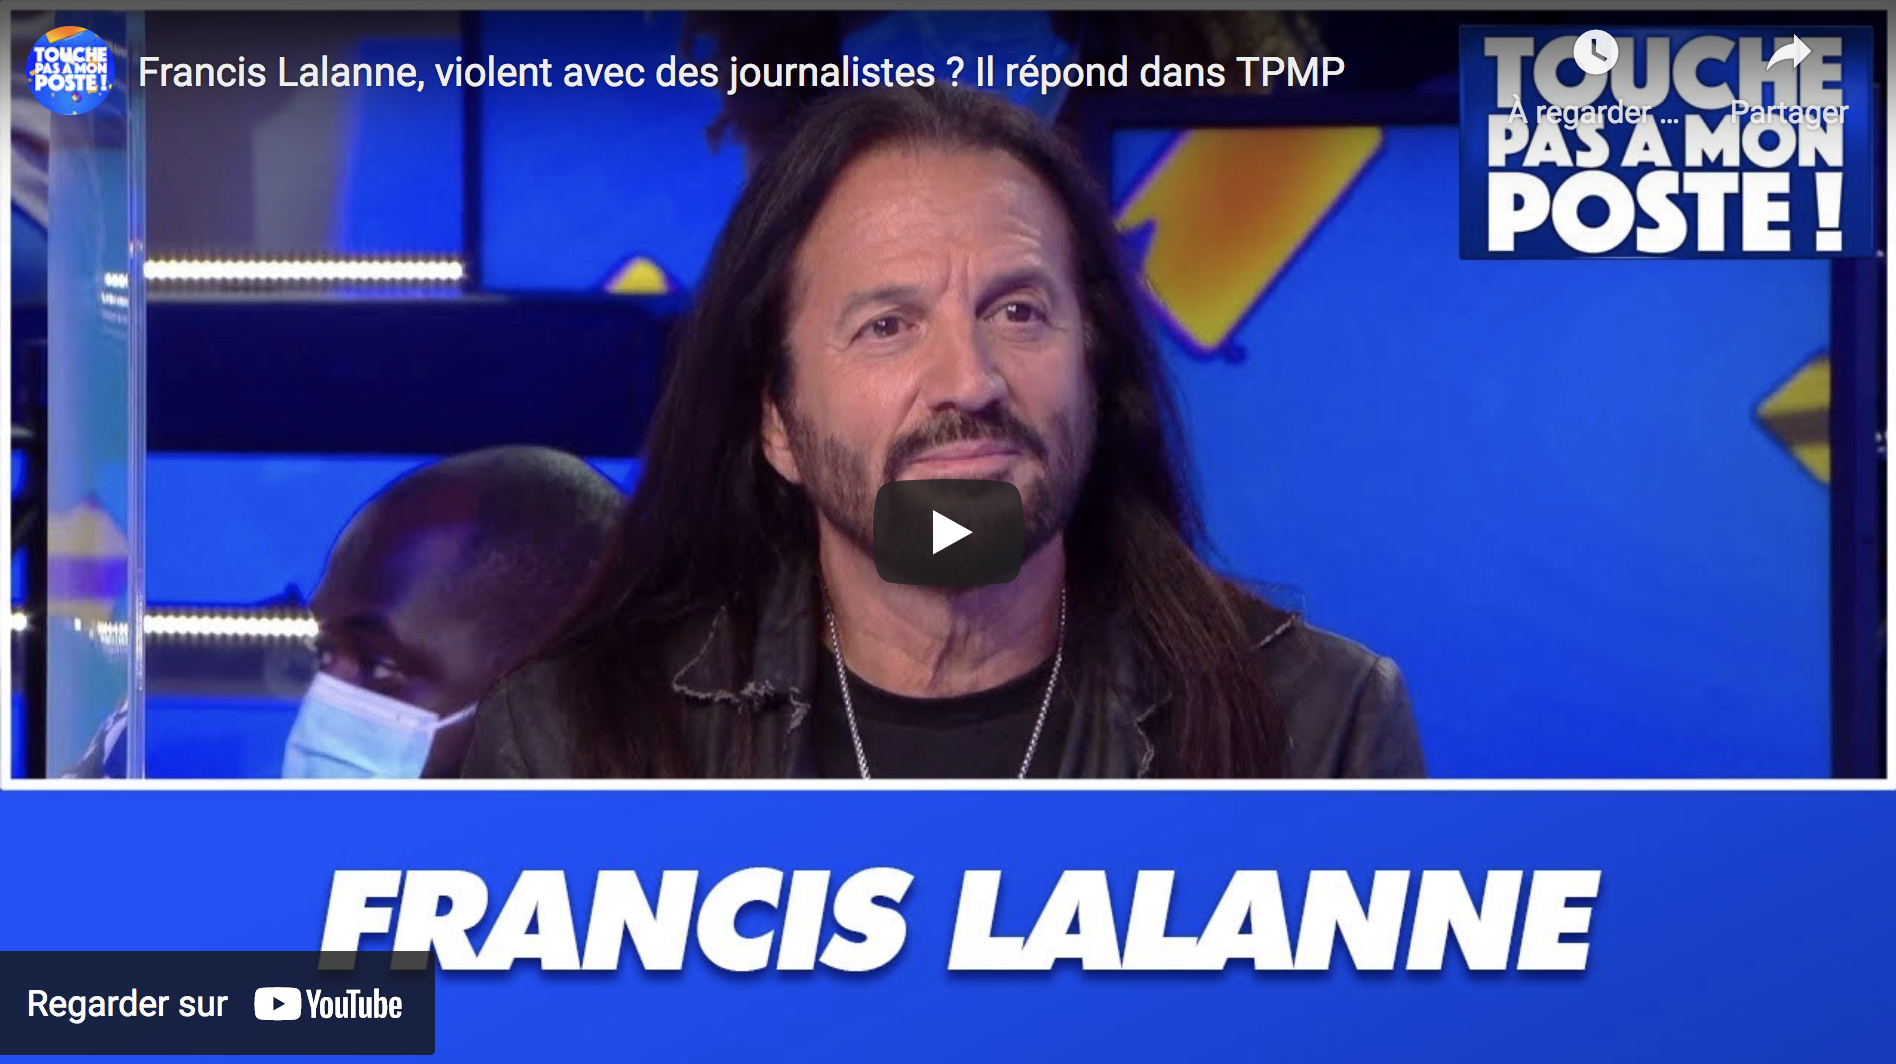 Francis Lalanne, violent avec des journalistes ? Il répond dans “TPMP” (VIDÉO)